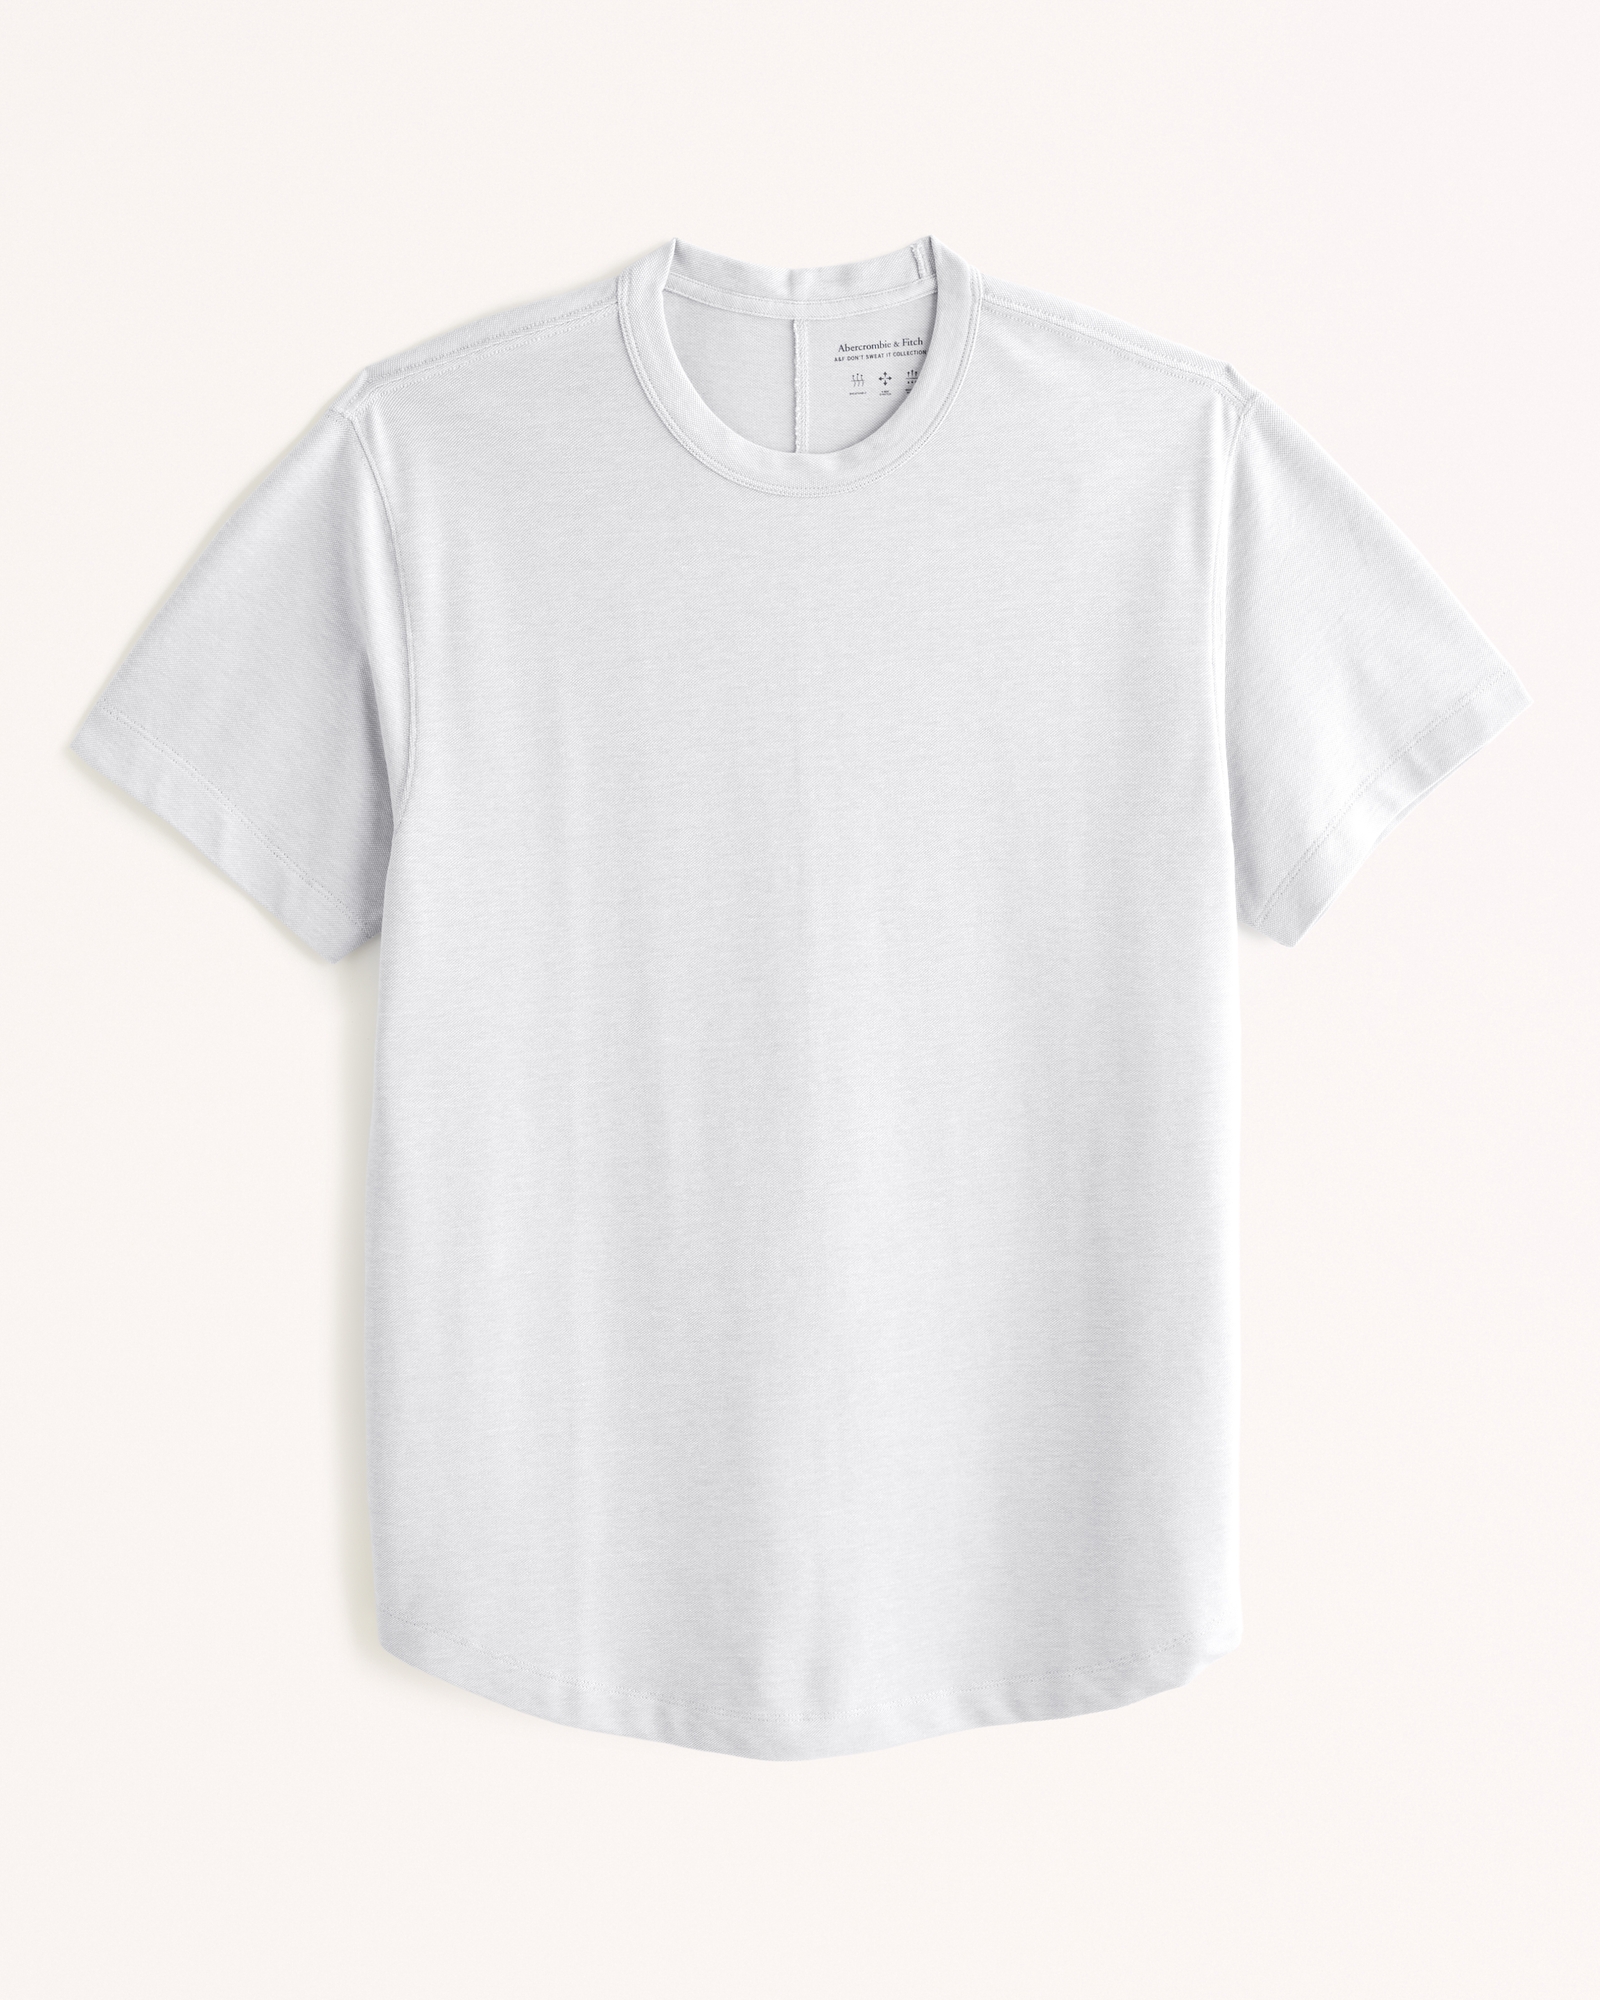 Personnalisation T-shirt et sweat, 14€